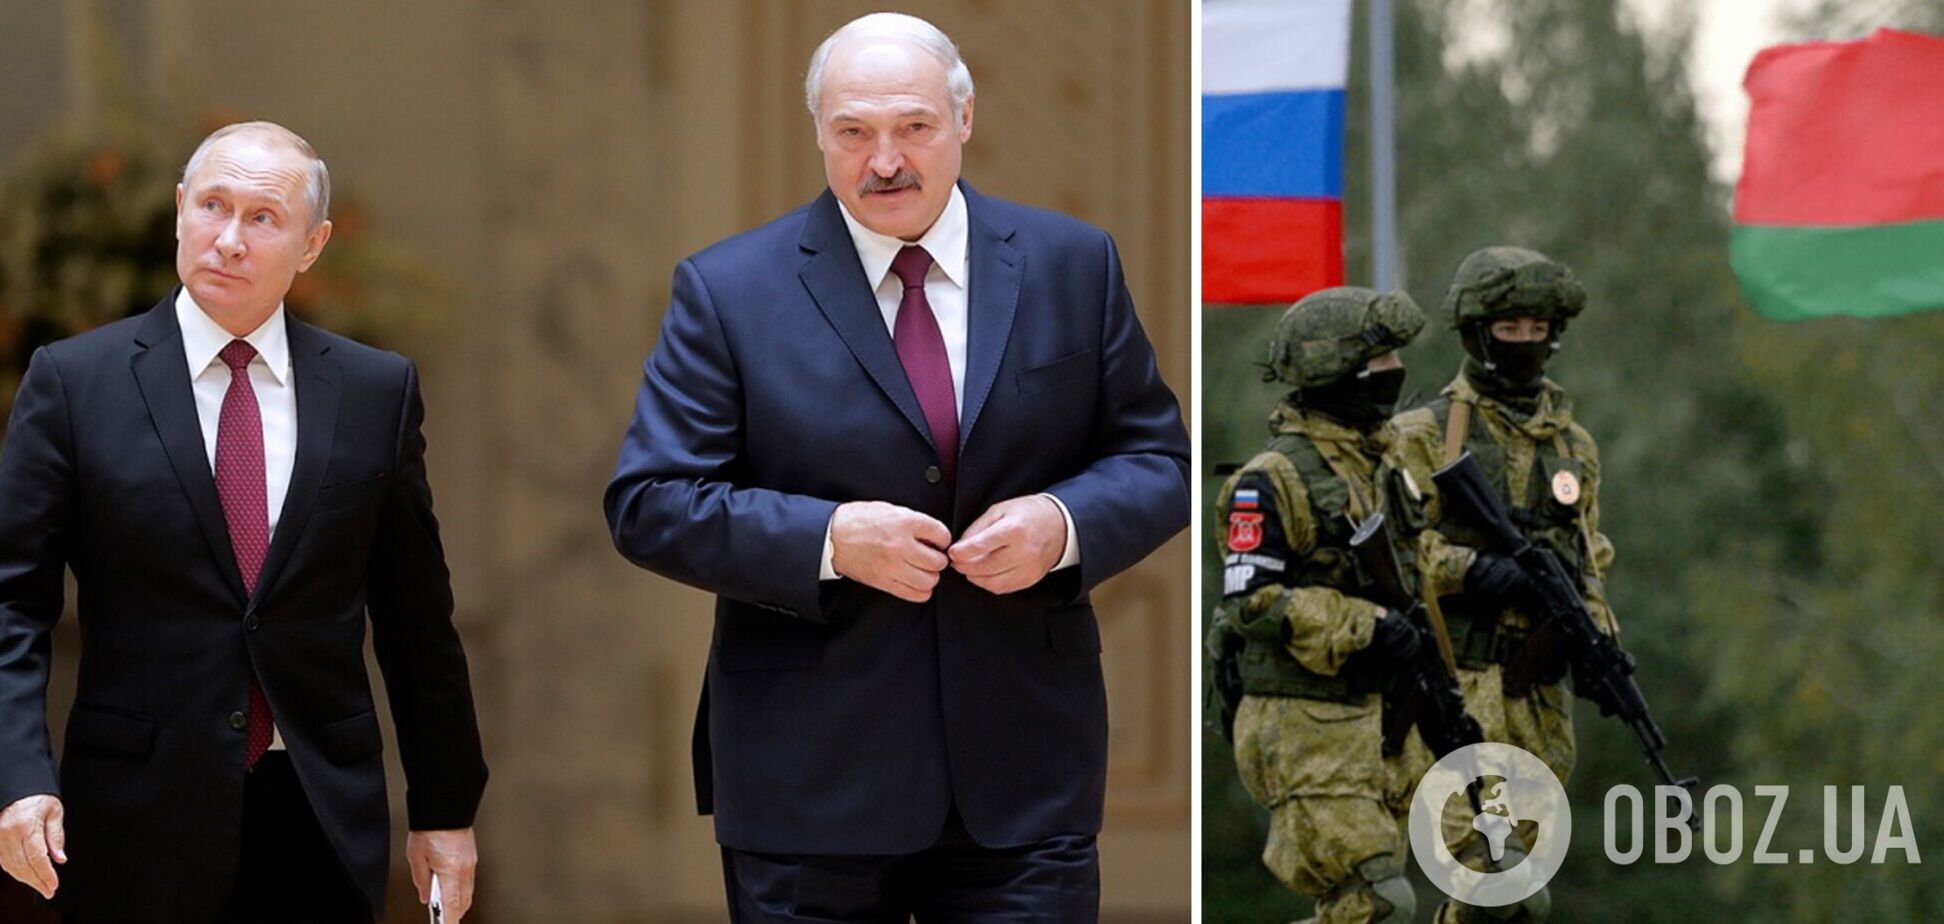 'Ответ будет жестким': Лукашенко заявил, что готов воевать вместе с россиянами только в случае агрессии против Беларуси